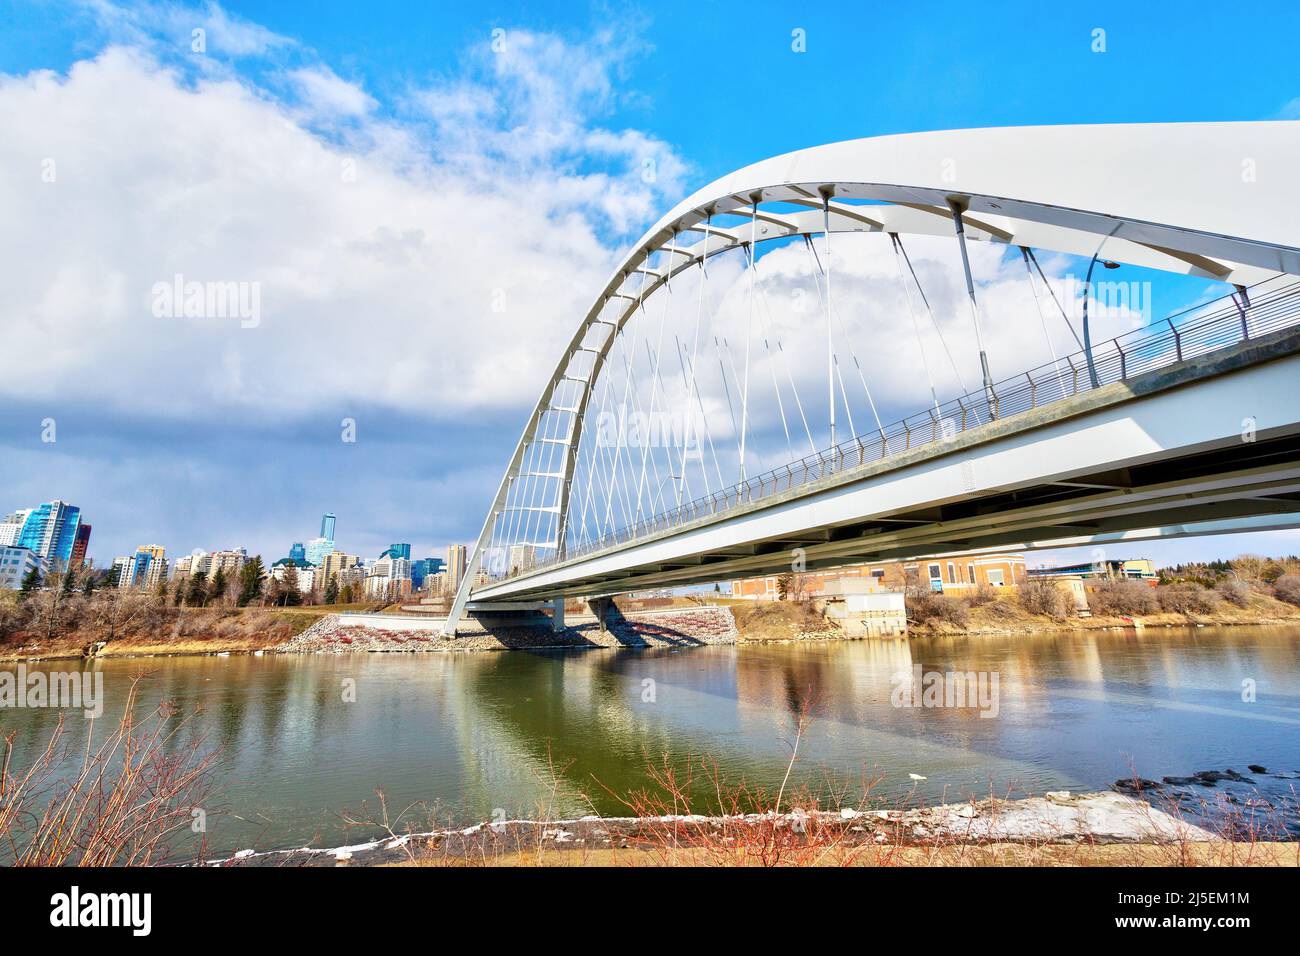 El icónico puente Walterdale, cruzando el río Saskatchewan, conduce al centro de Edmonton, Alberta, Canadá. Foto de stock